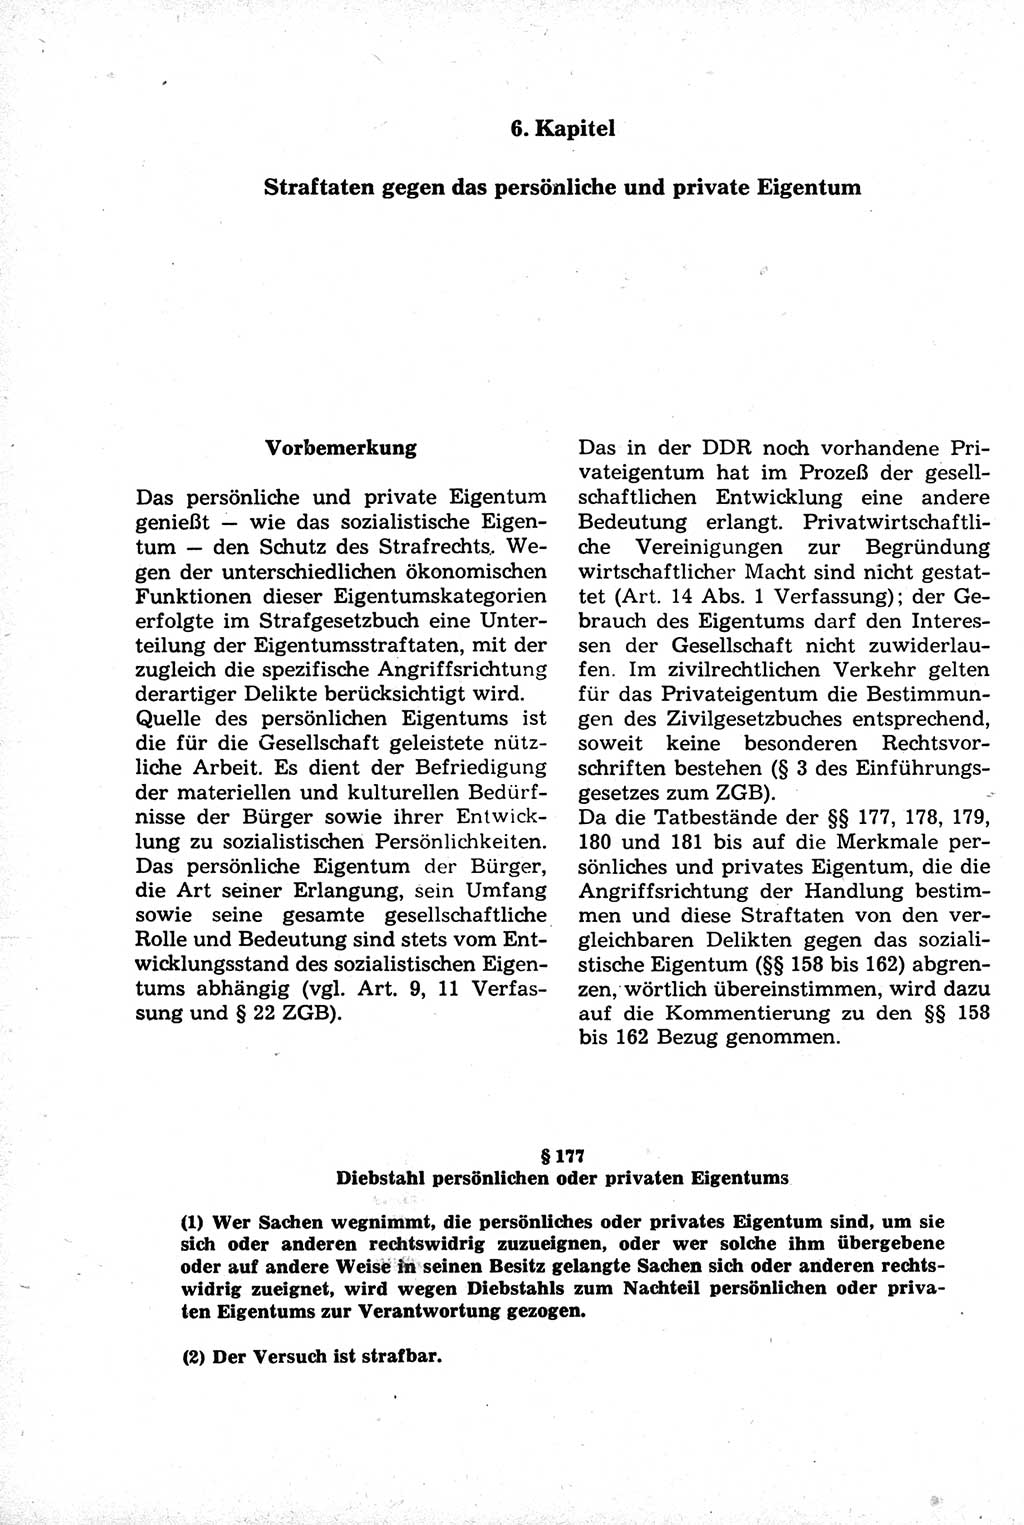 Strafrecht der Deutschen Demokratischen Republik (DDR), Kommentar zum Strafgesetzbuch (StGB) 1981, Seite 448 (Strafr. DDR Komm. StGB 1981, S. 448)